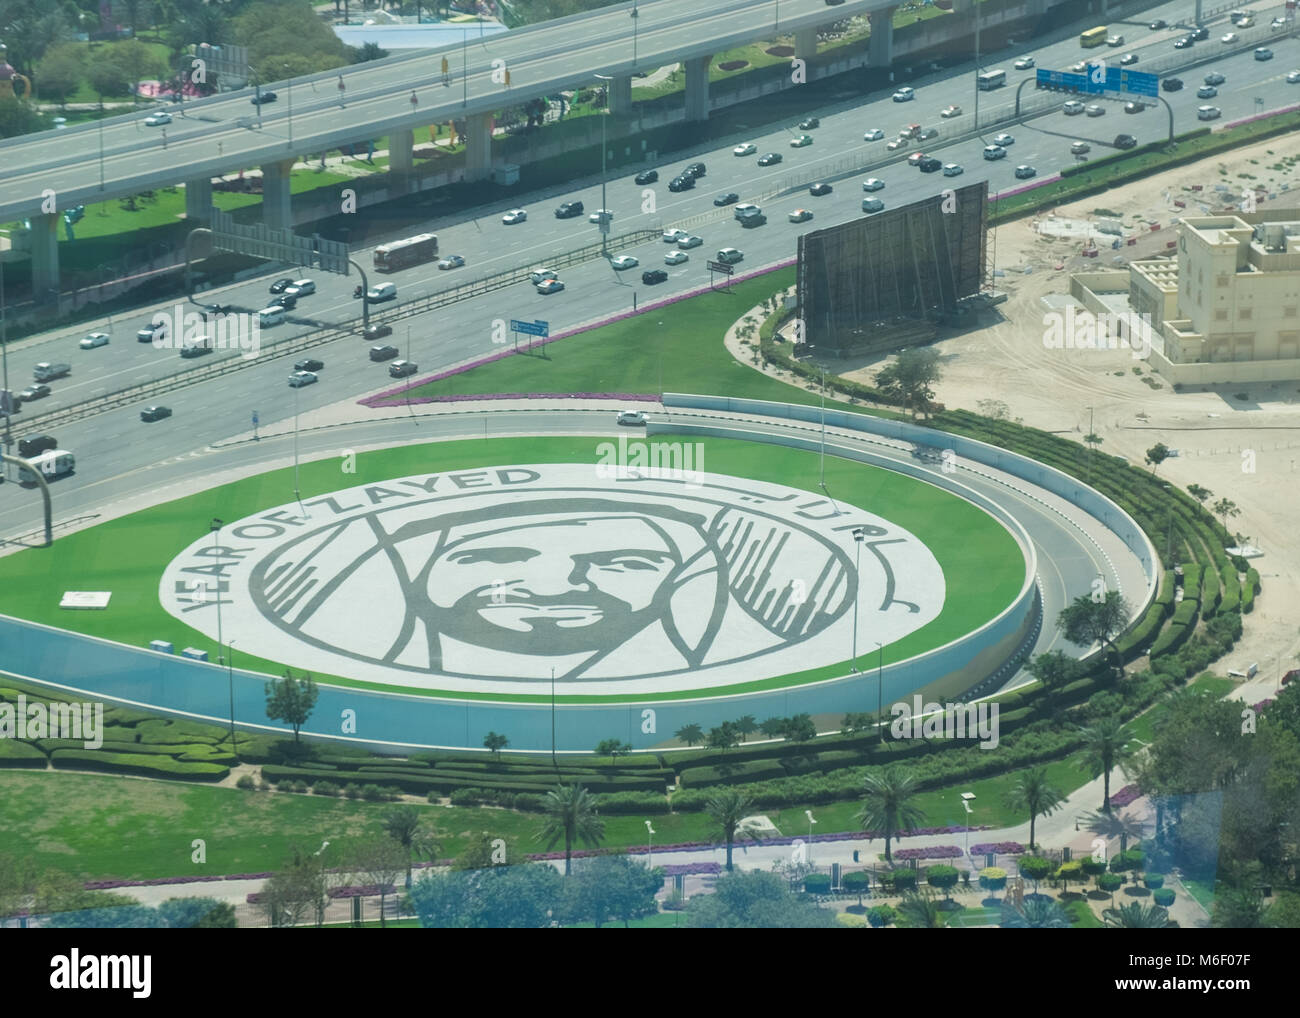 Segno distintivo di Dubai il telaio, guardando verso il basso in corrispondenza di un gigante Zayed ritratto accanto alla strada. Foto Stock